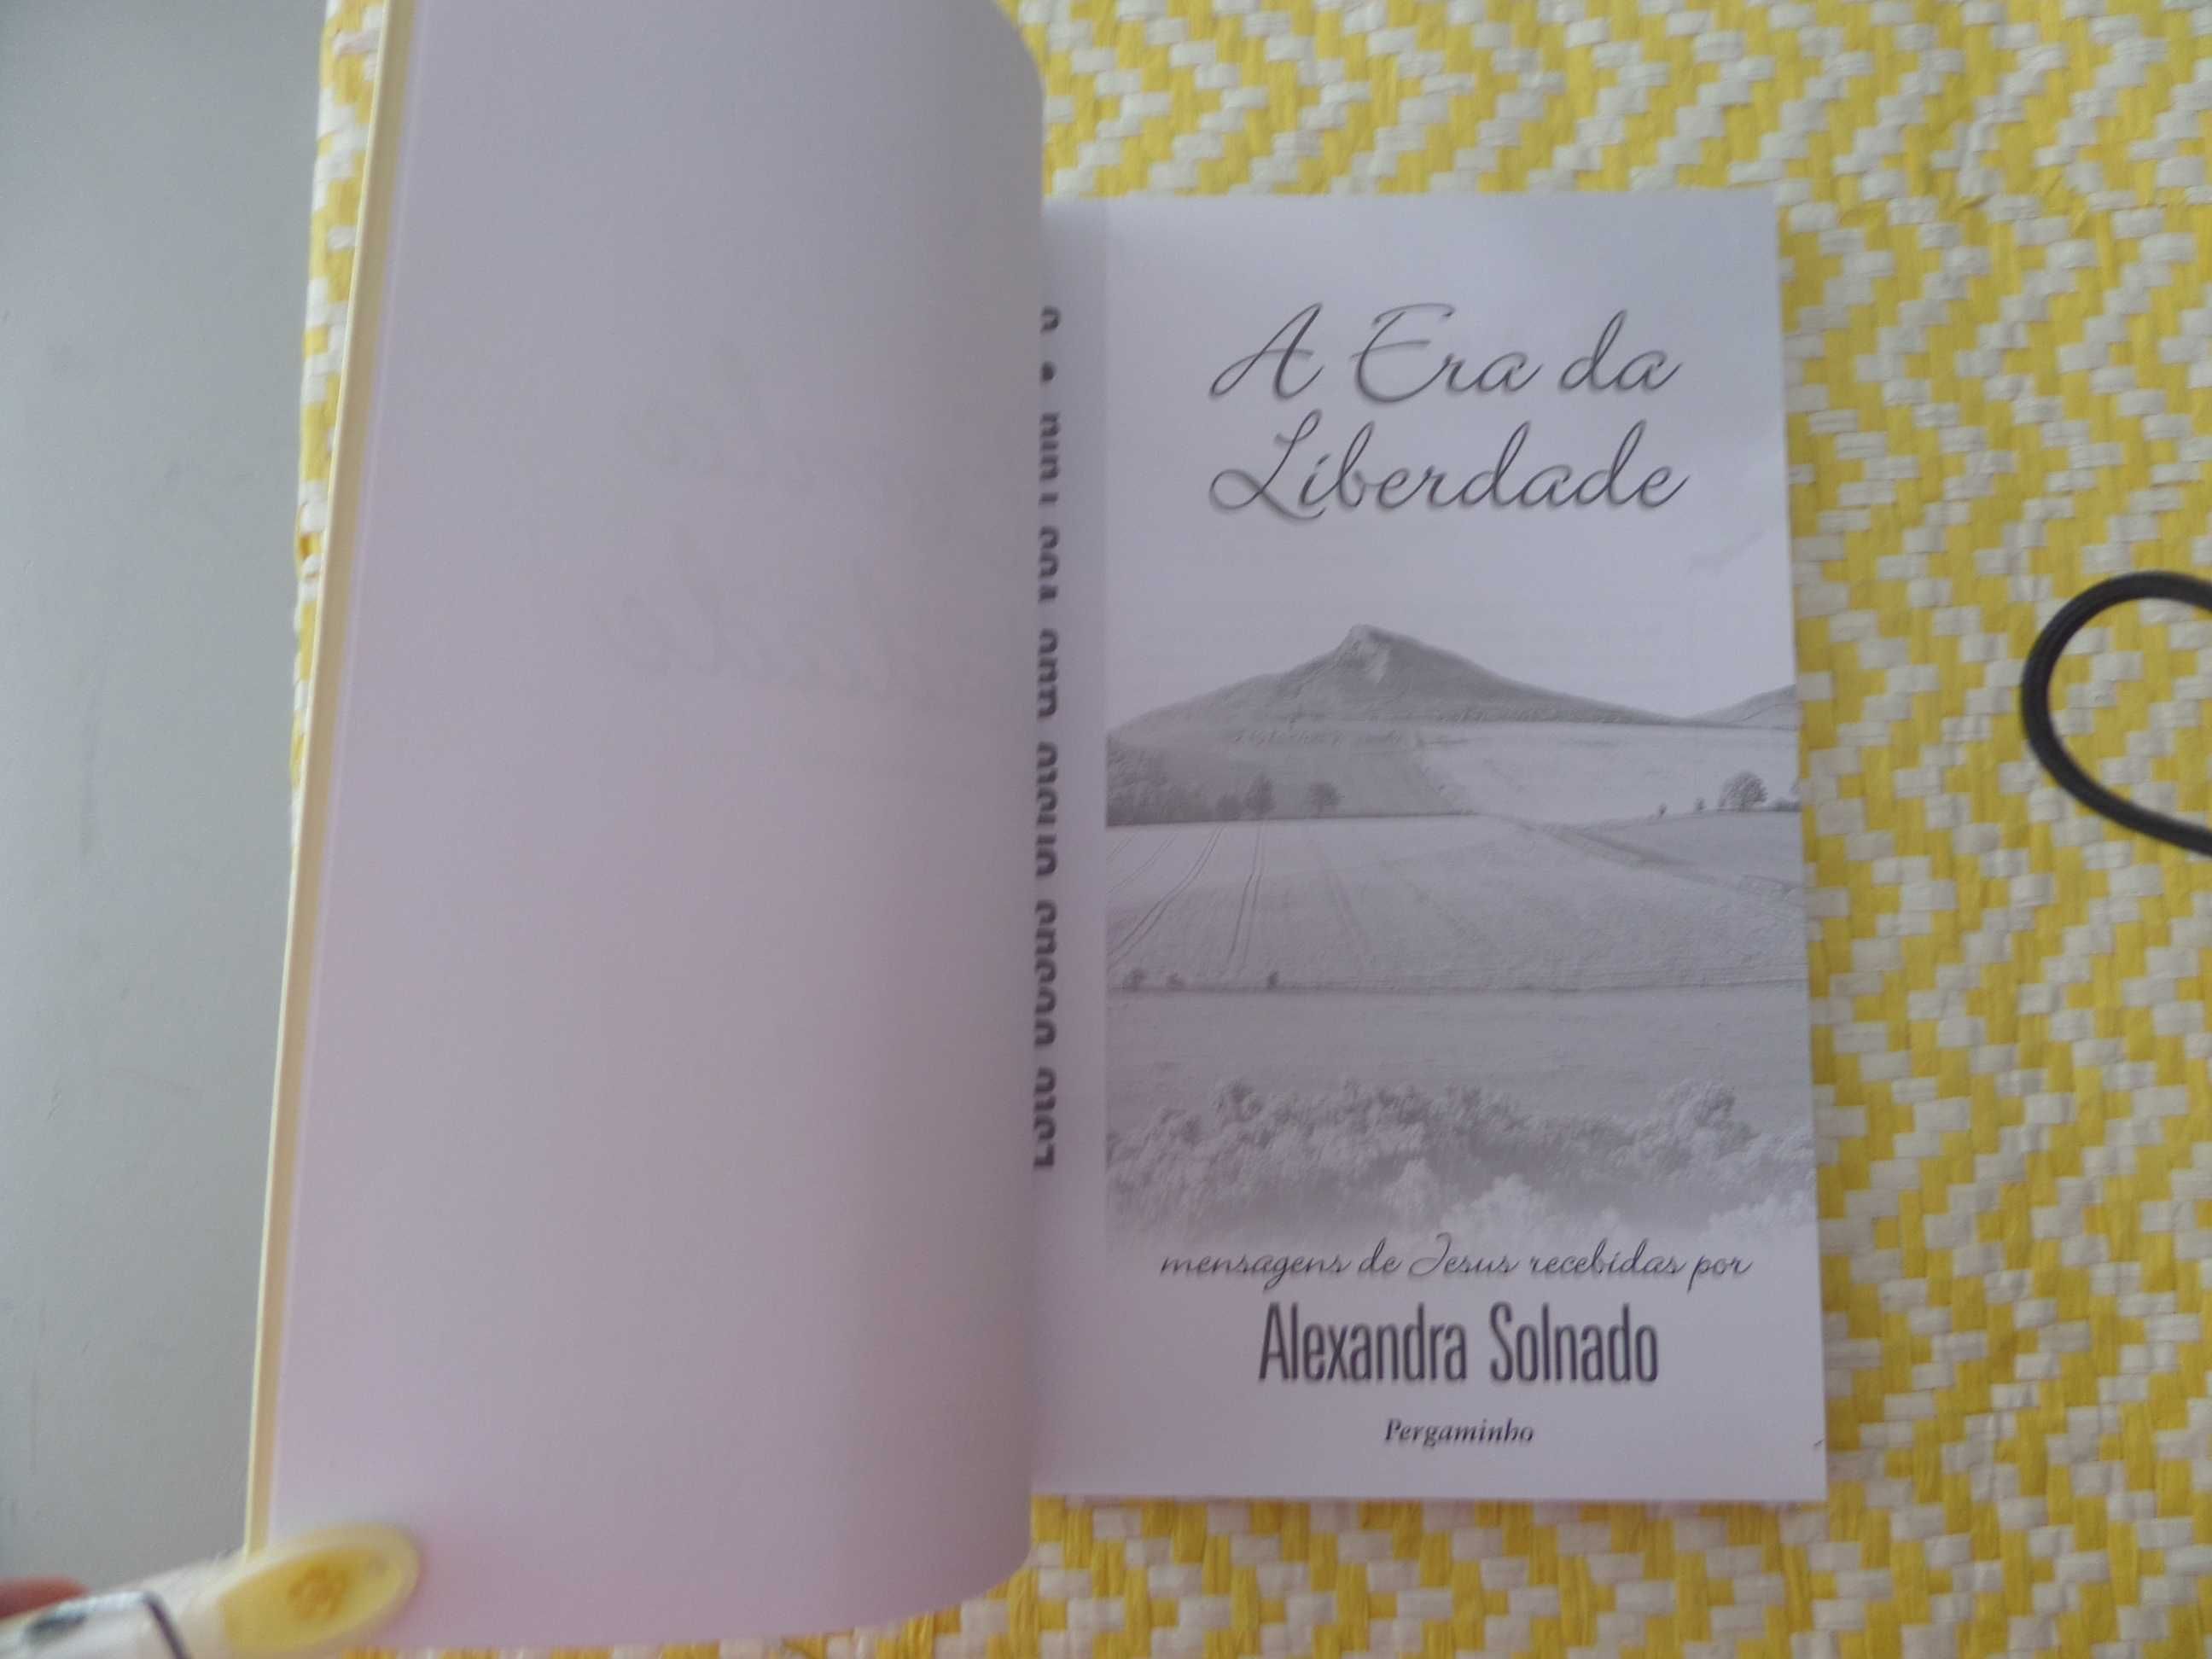 A ERA DA LIBERDADE  
Alexandra Solnado 
Edição: Pergaminho